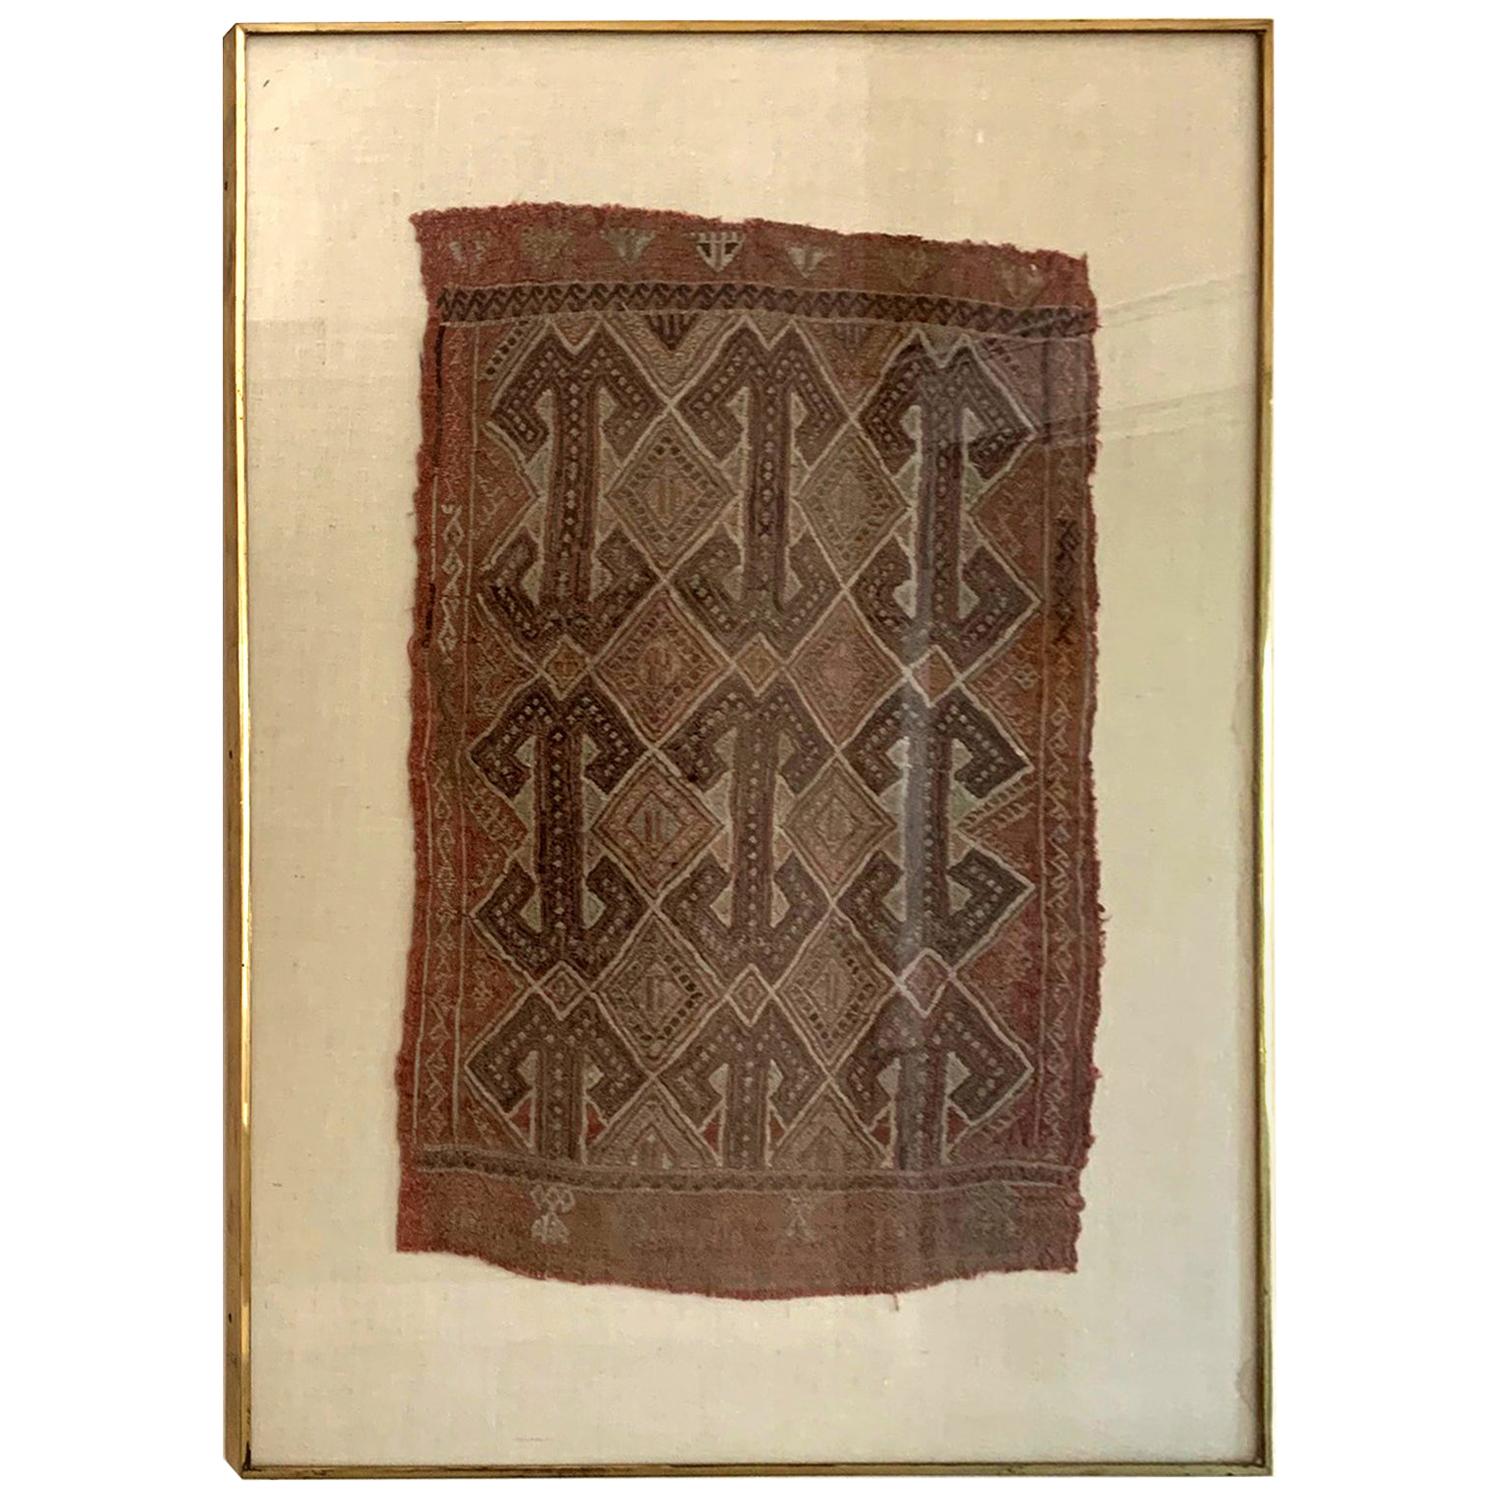 Framed Antique Turkish Tribal Textile Fragment